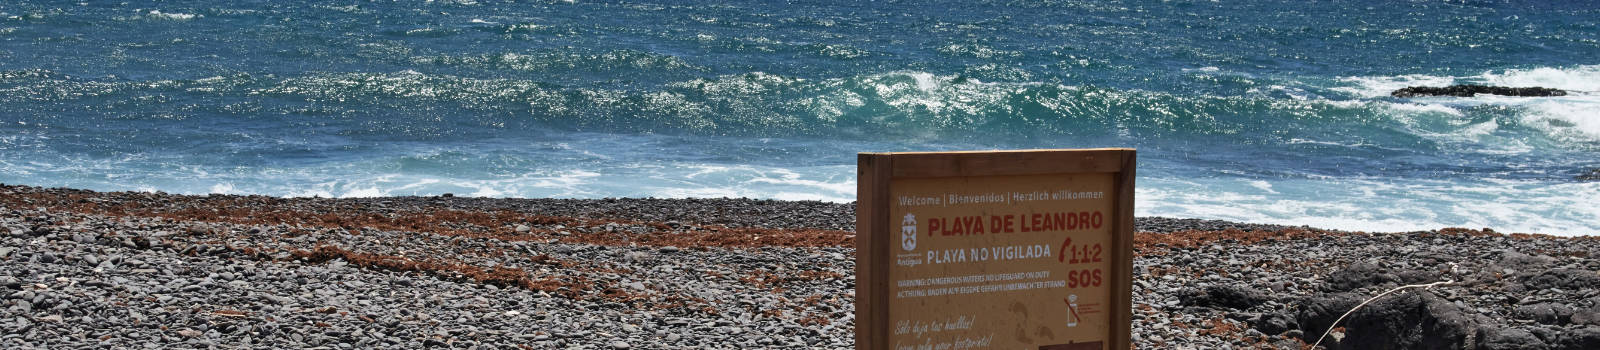 Die Strände Fuerteventuras: Playa de Leonardo